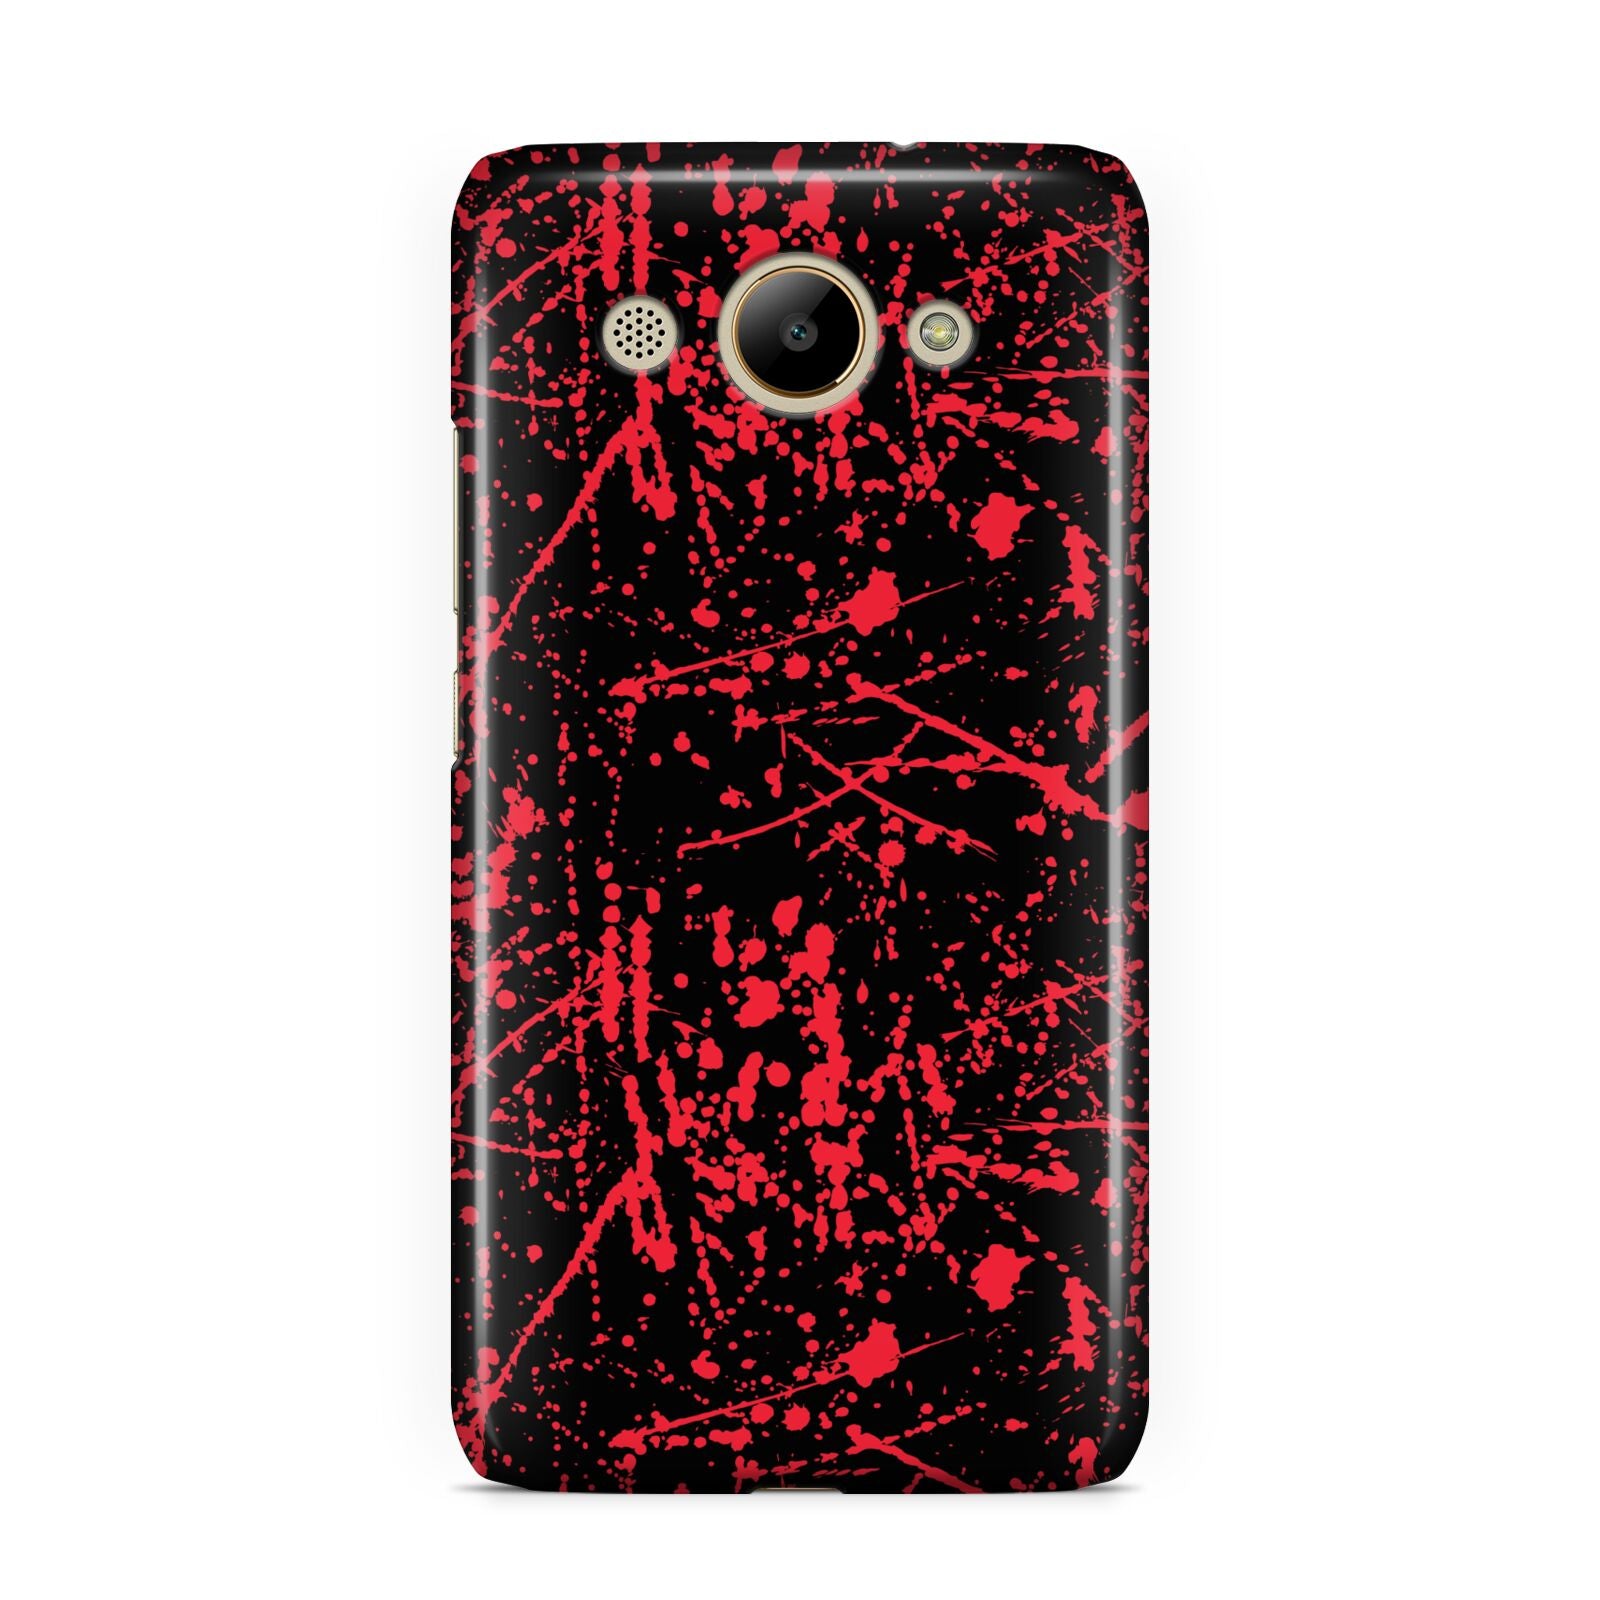 Blood Splatters Huawei Y3 2017